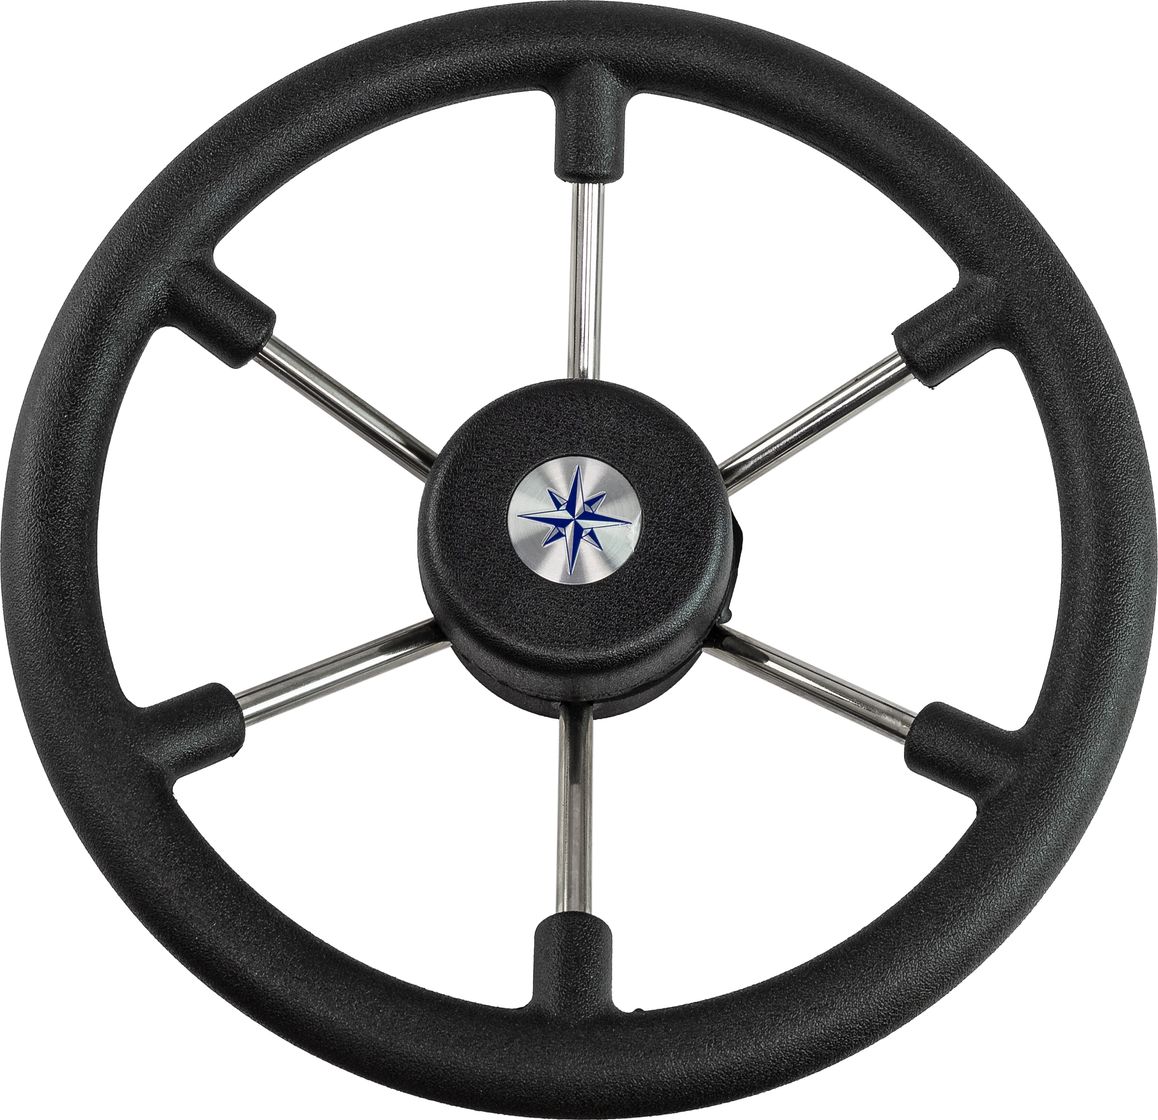 Рулевое колесо LEADER TANEGUM черный обод серебряные спицы д. 330 мм VN7330-01 рулевое колесо leader tanegum белый обод серебряные спицы д 360 мм vn7360 08